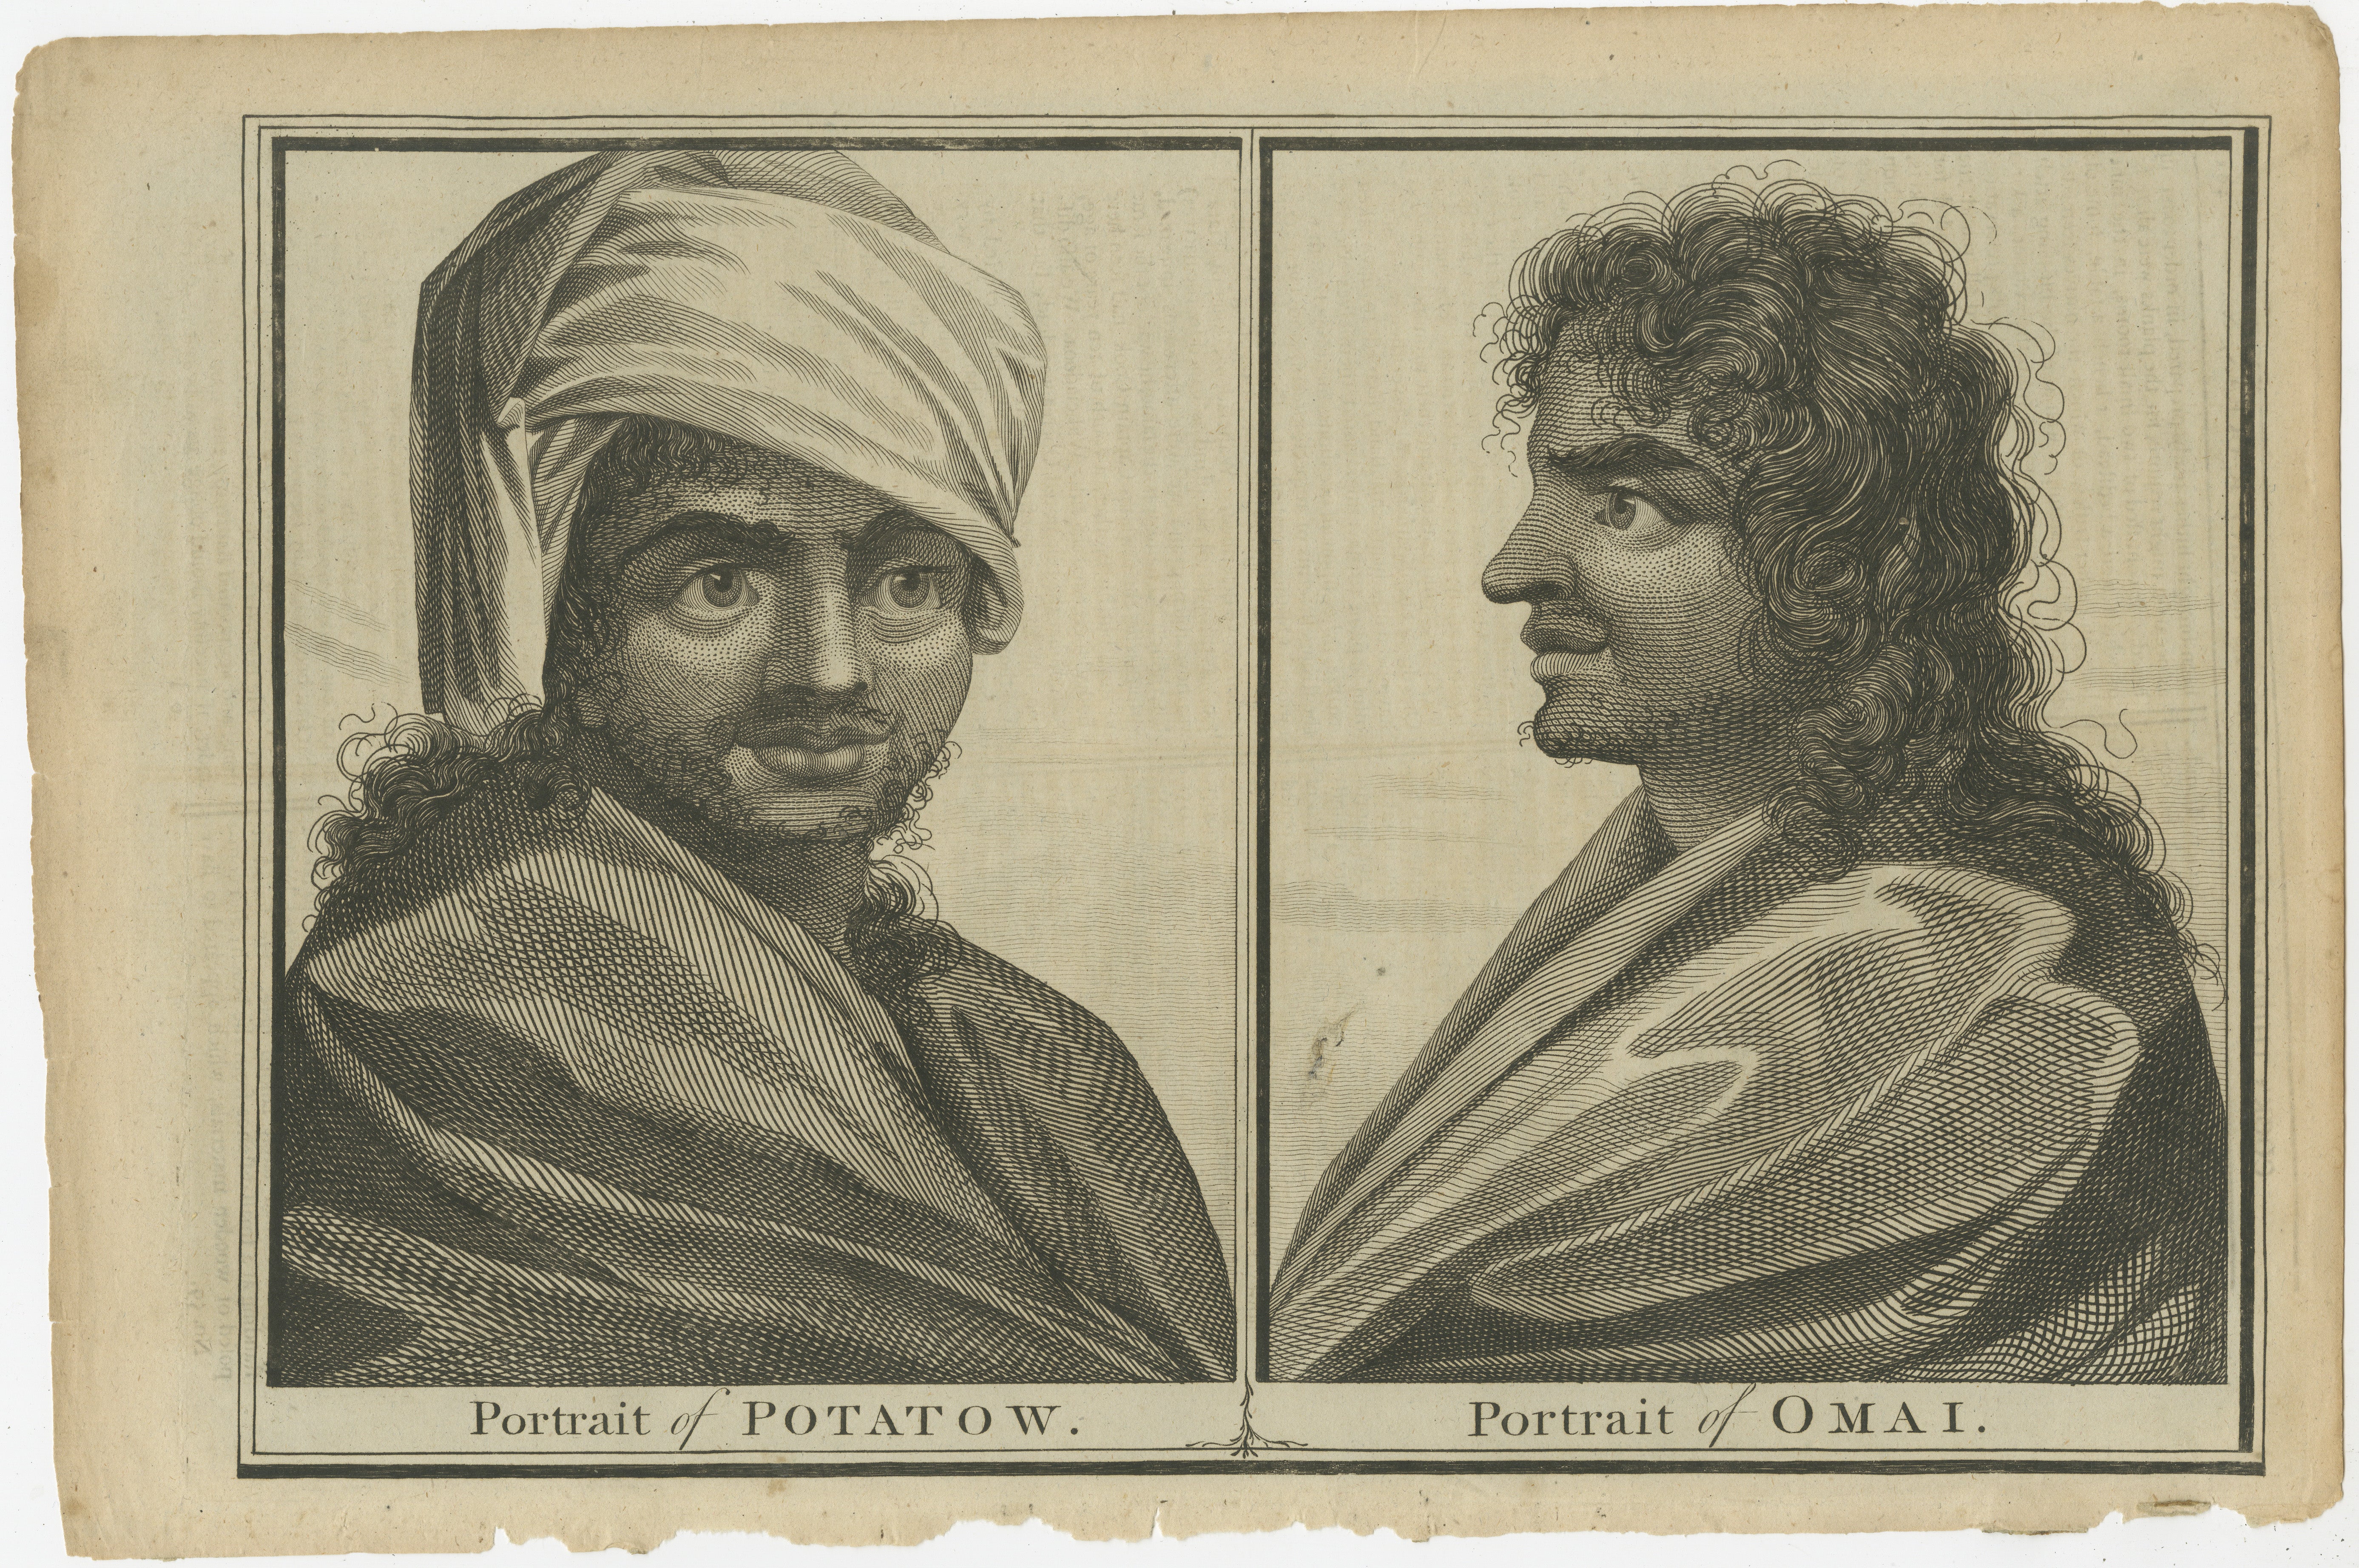 La gravure ancienne originale mise en vente présente les portraits côte à côte de deux individus originaires de Tahiti, étiquetés 